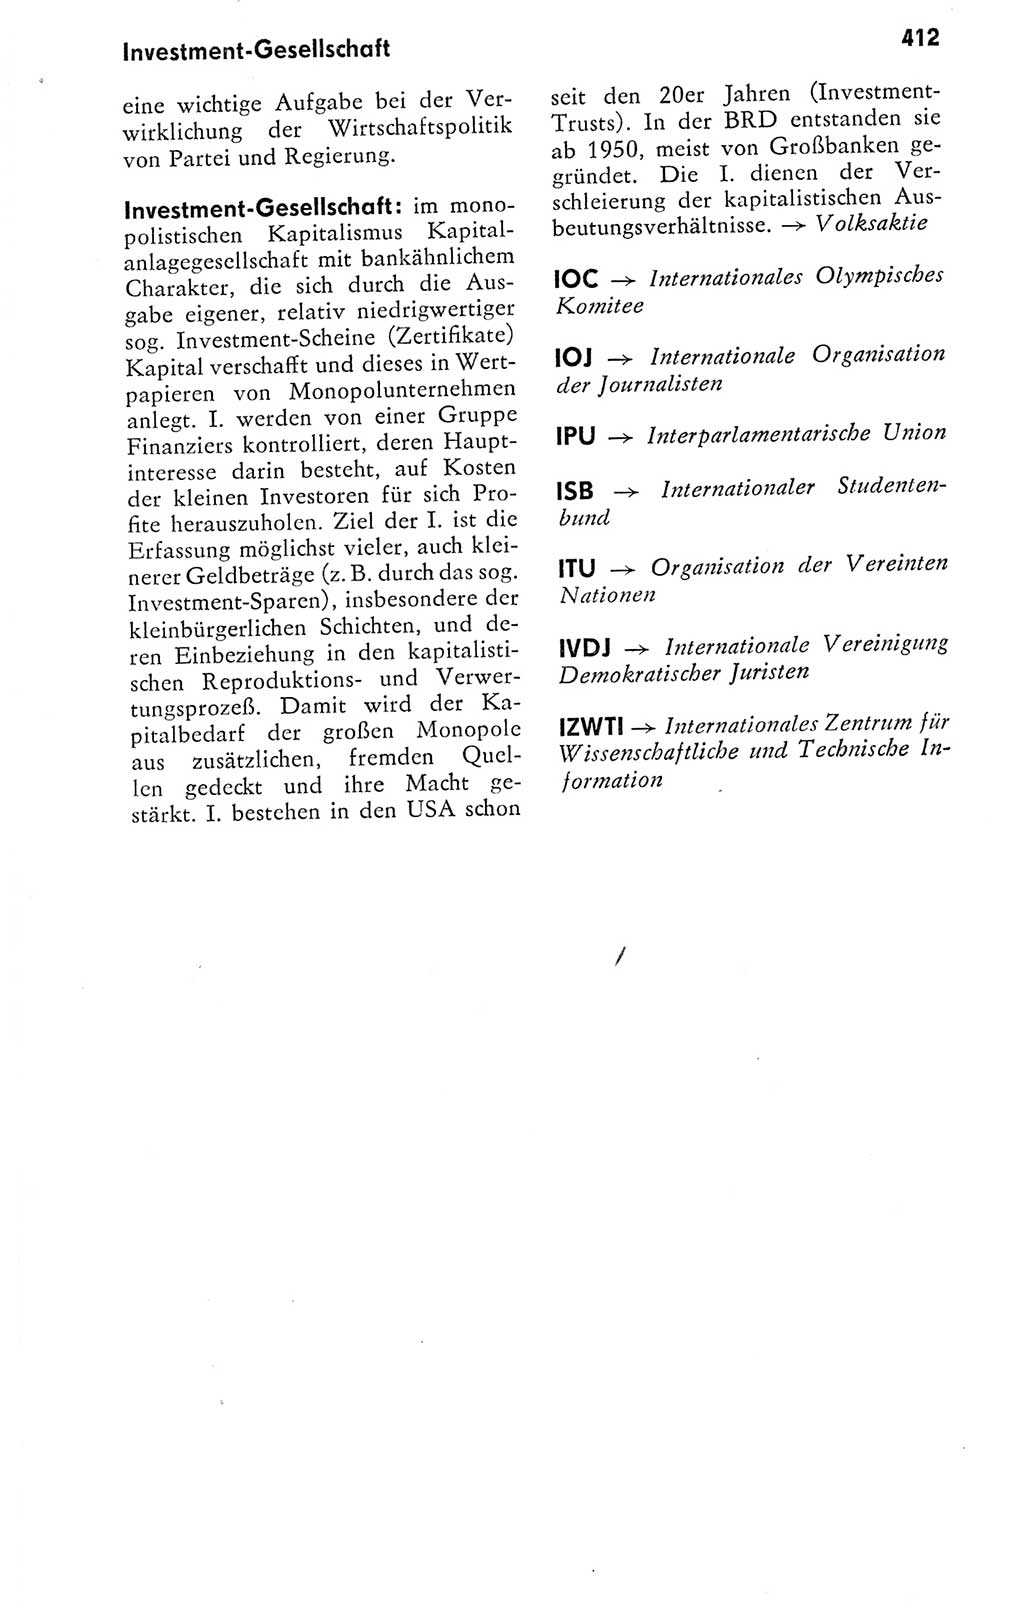 Kleines politisches Wörterbuch [Deutsche Demokratische Republik (DDR)] 1978, Seite 412 (Kl. pol. Wb. DDR 1978, S. 412)